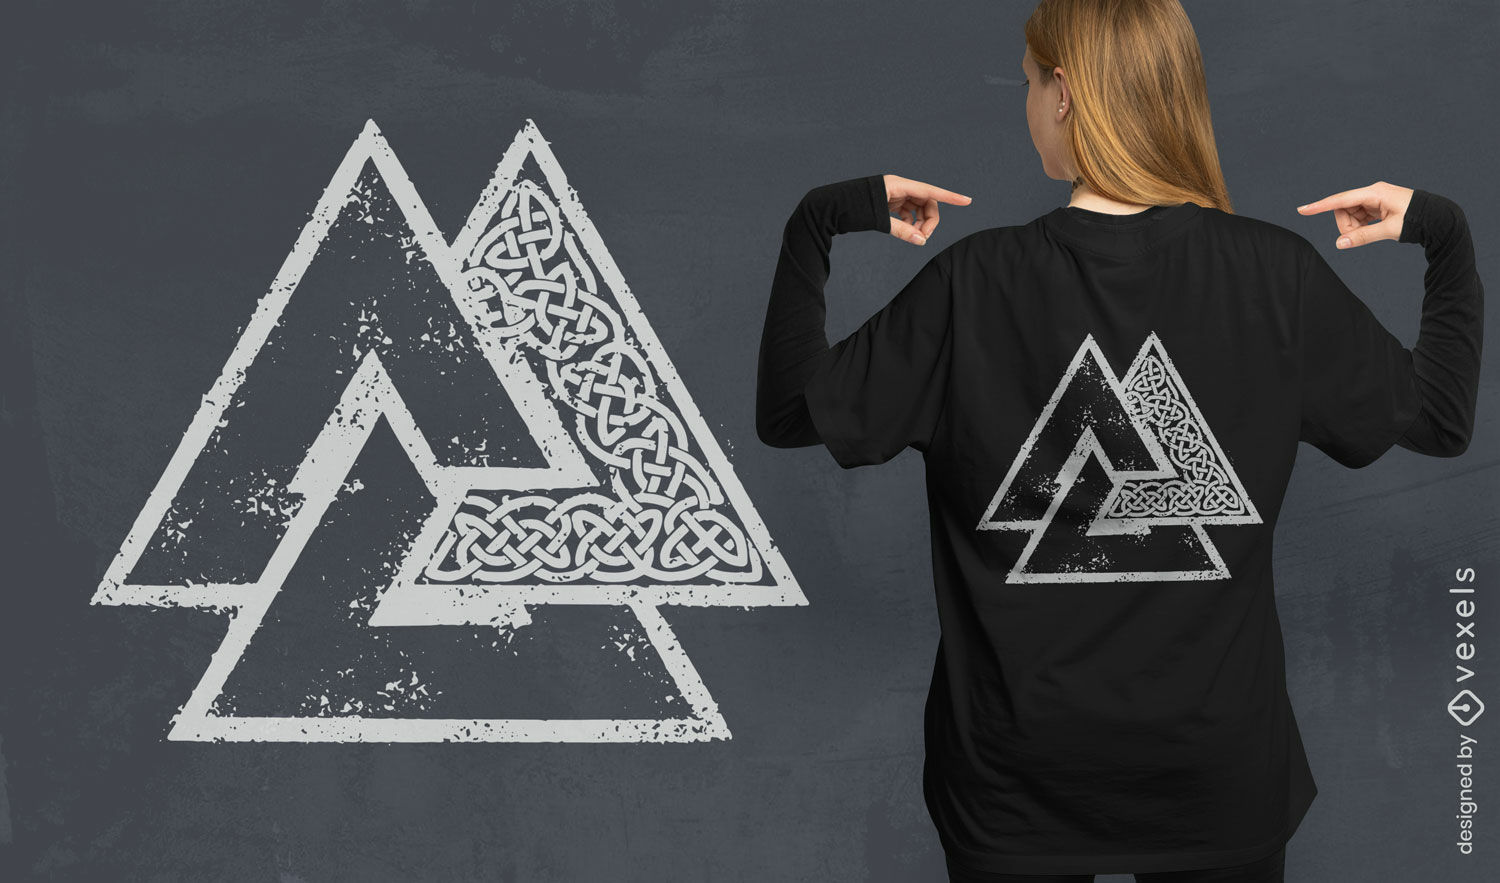 Ancient viking symbols t-shirt design